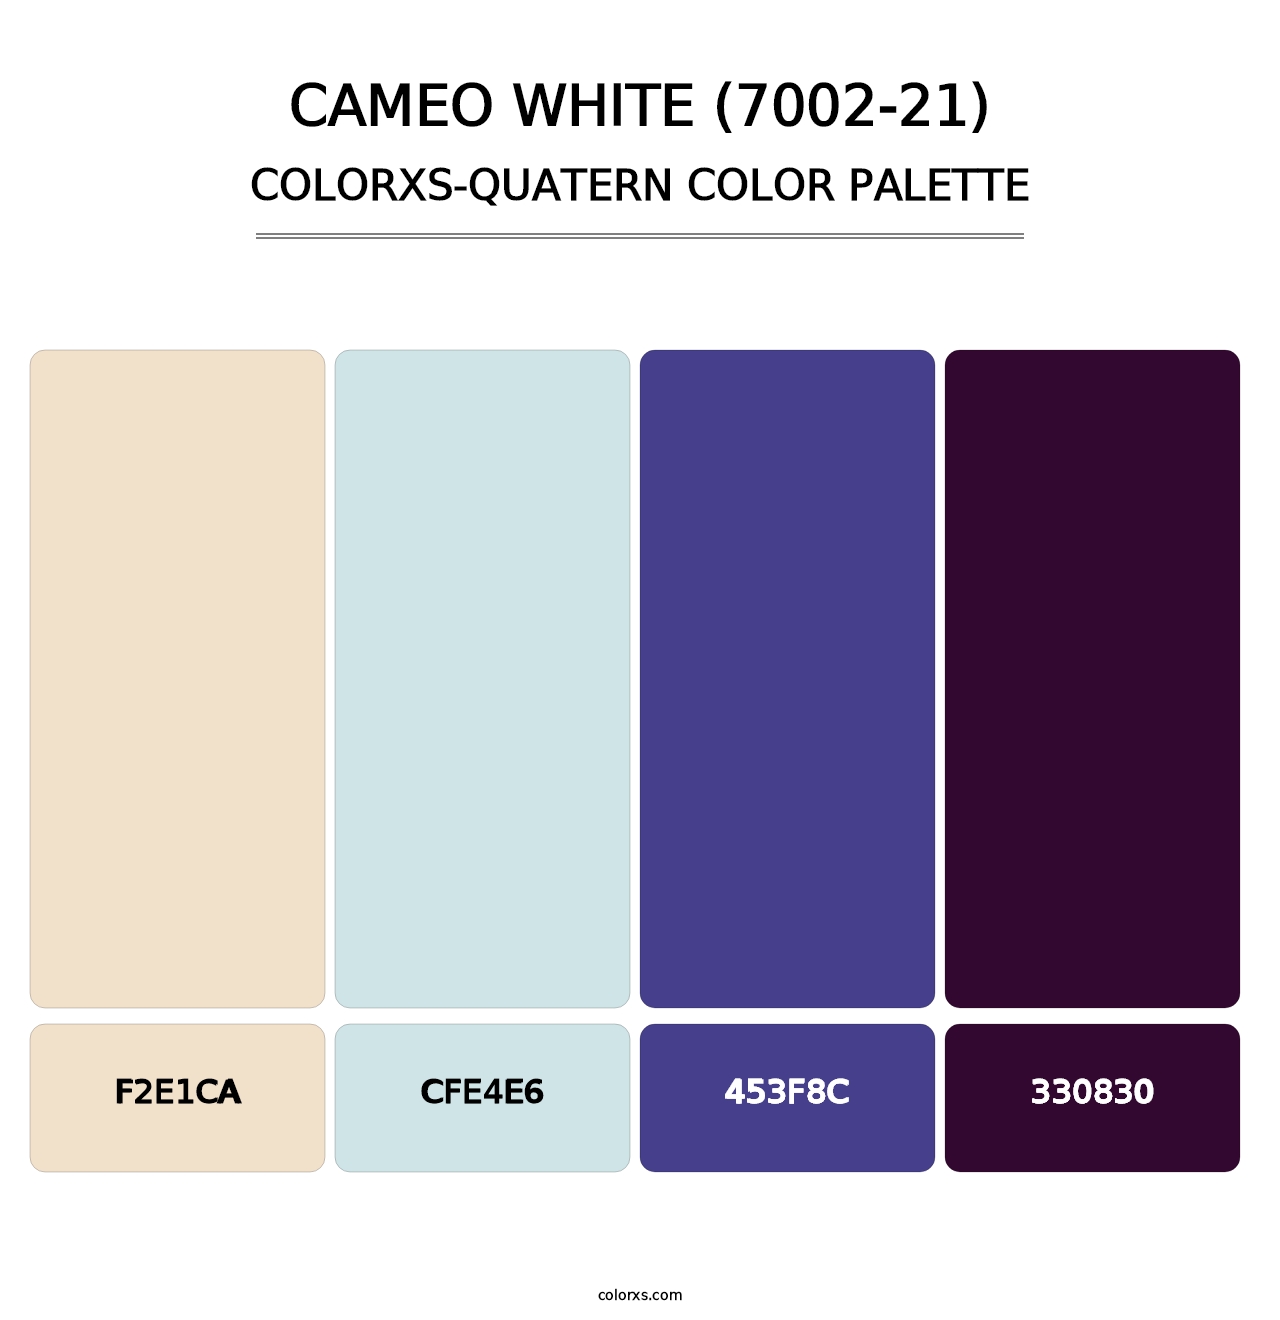 Cameo White (7002-21) - Colorxs Quatern Palette